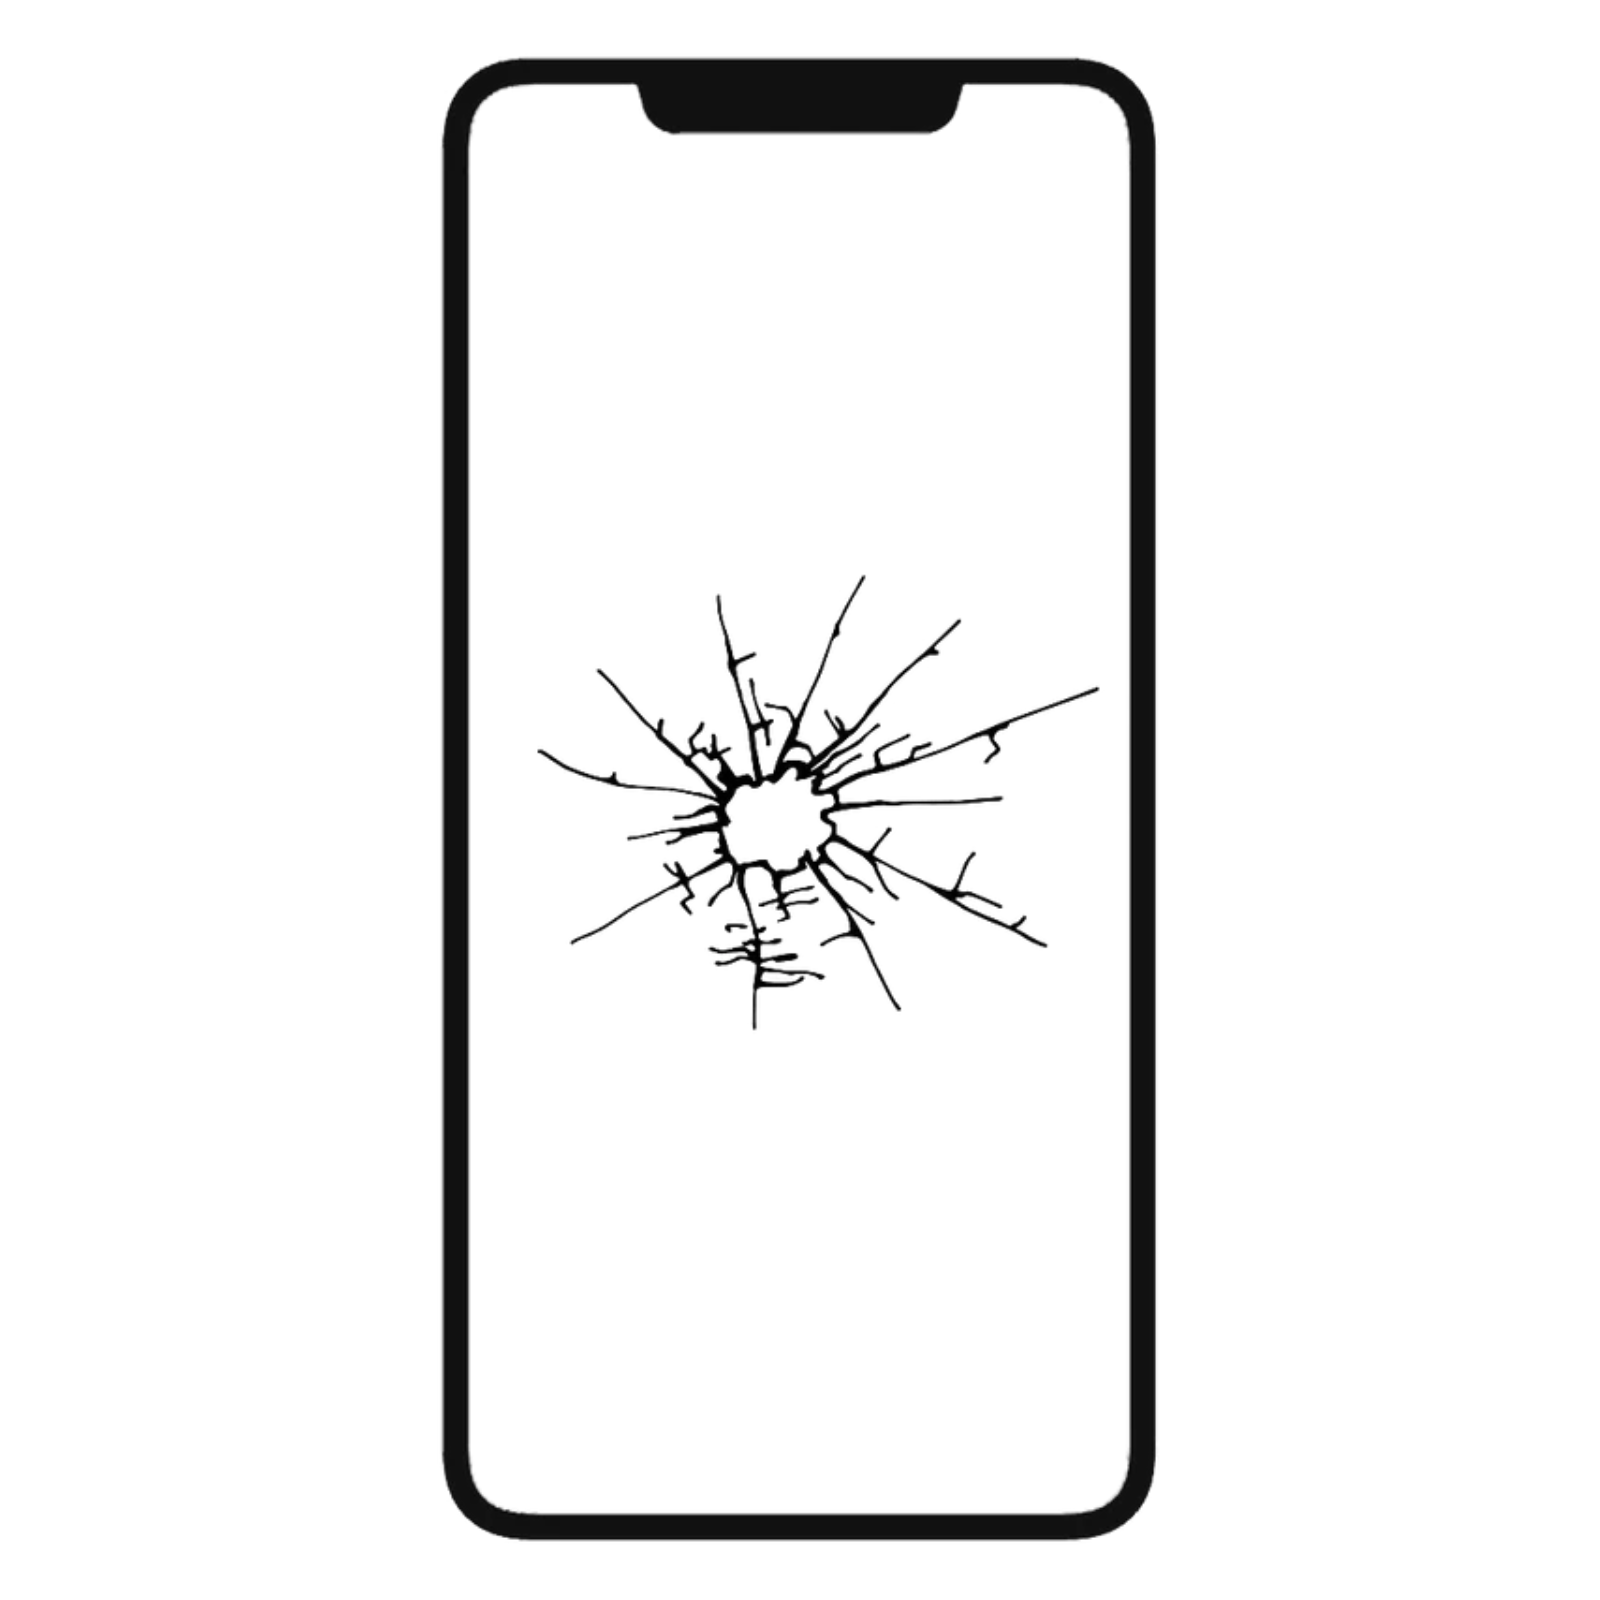 iPhone 12 Screen Repair